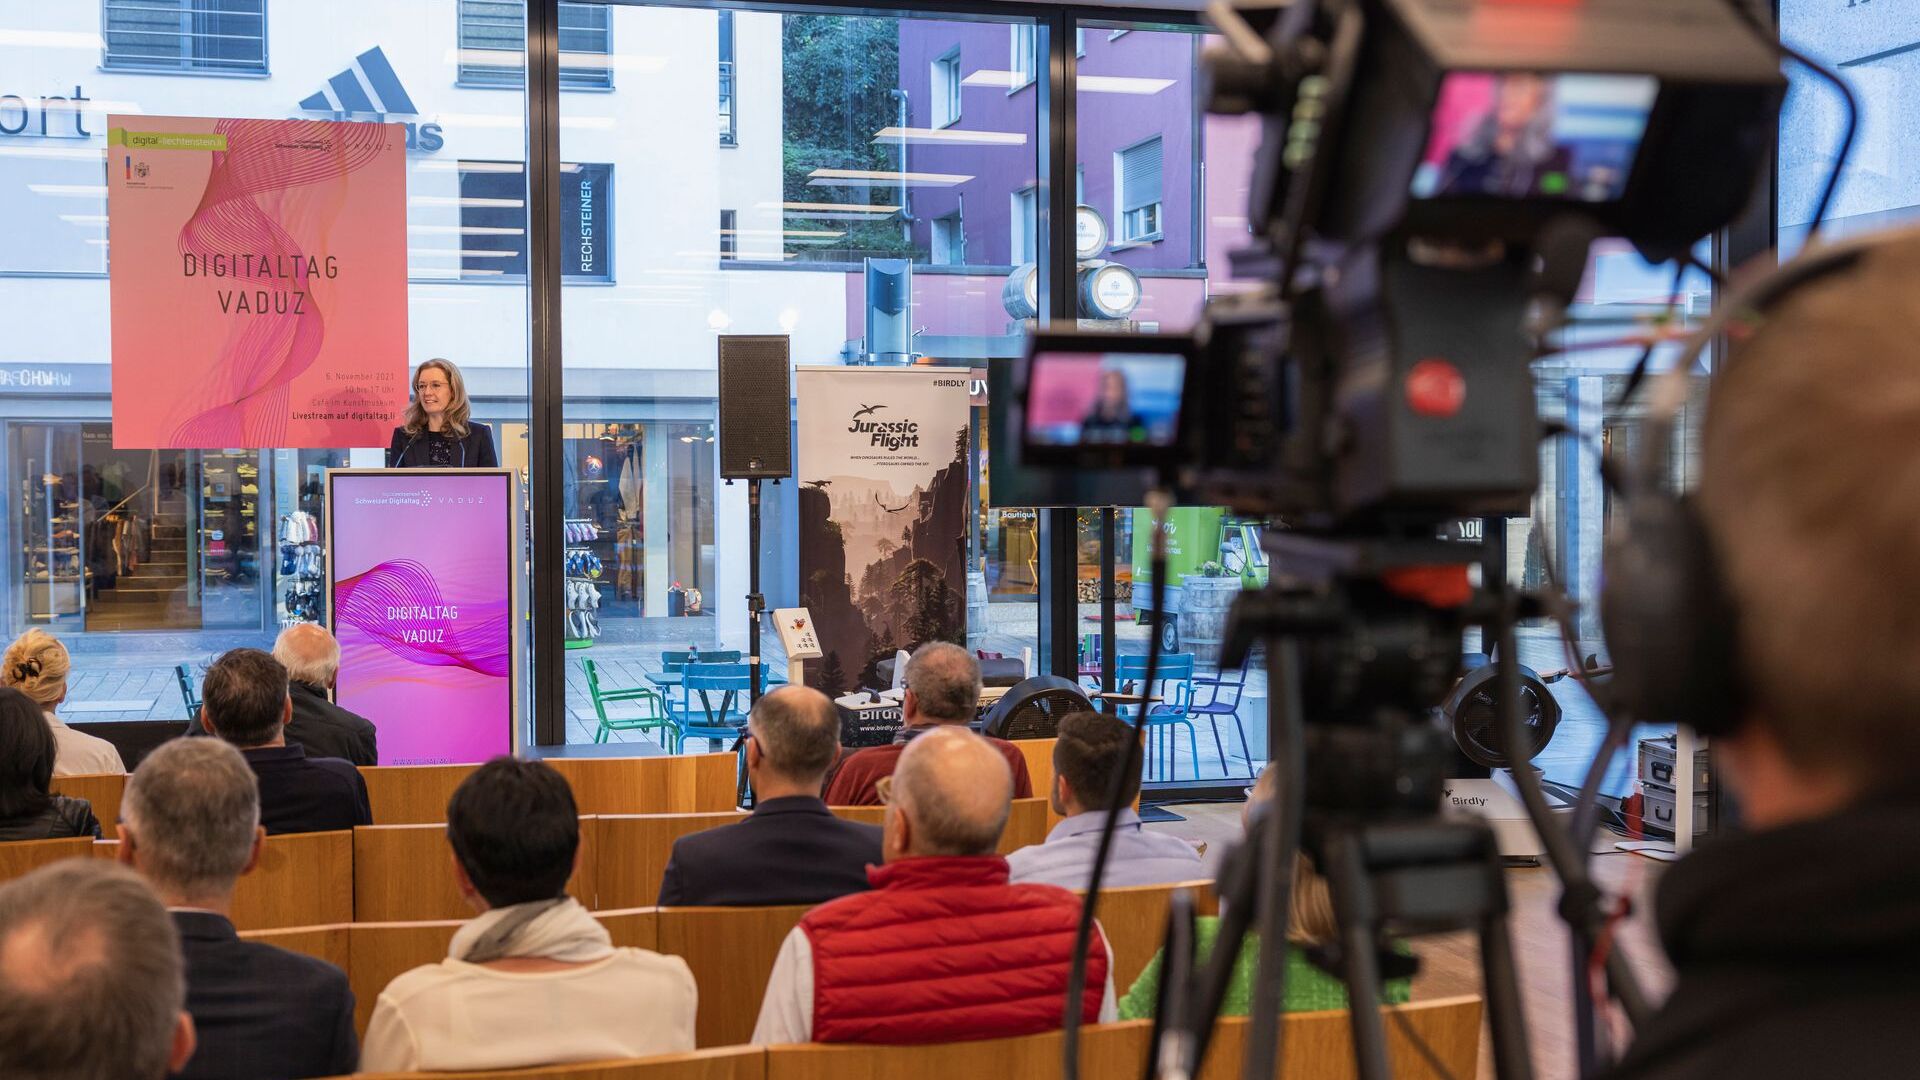 „Дигиталтаг Вадуз“, који је Музеј уметности главног града Кнежевине Лихтенштајн дочекао у суботу 6. новембра 2021, изазвао је ентузијазам јавности и говорника у аналогији са „Швајцарским дигиталним даном“ следећег 10.: интервенција заменице премијера Моунани Сабине